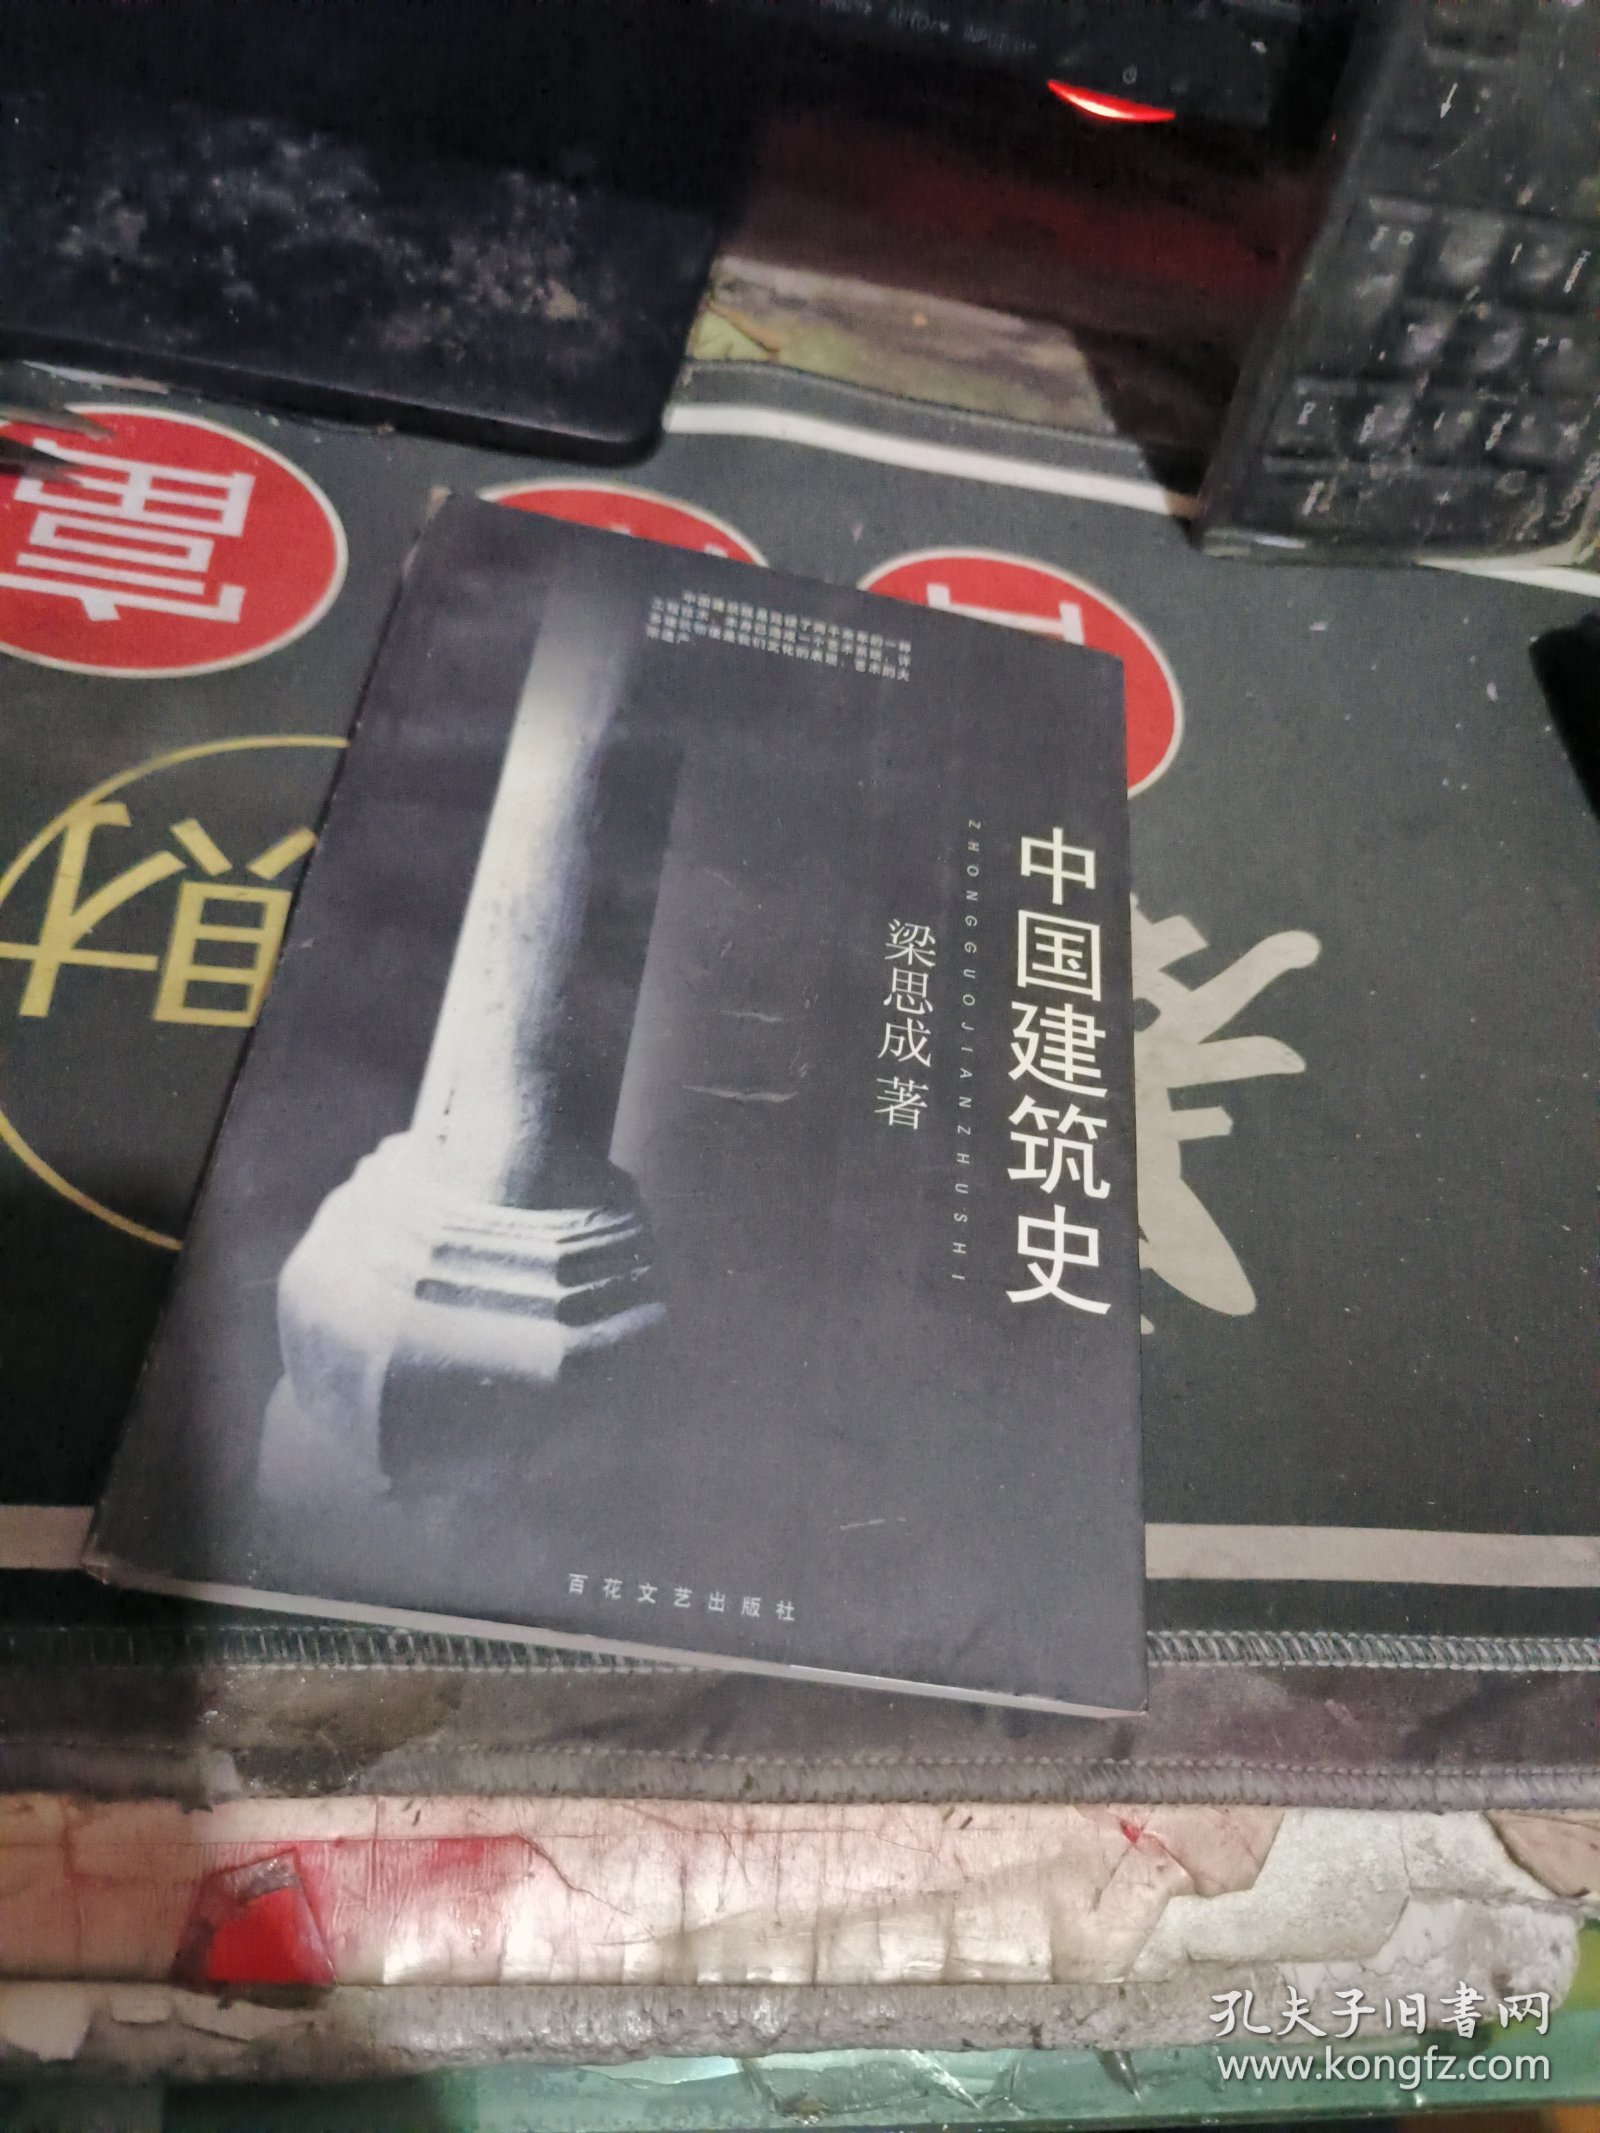 中国建筑史 （ 1998年1 版 印 、品相不错 ）